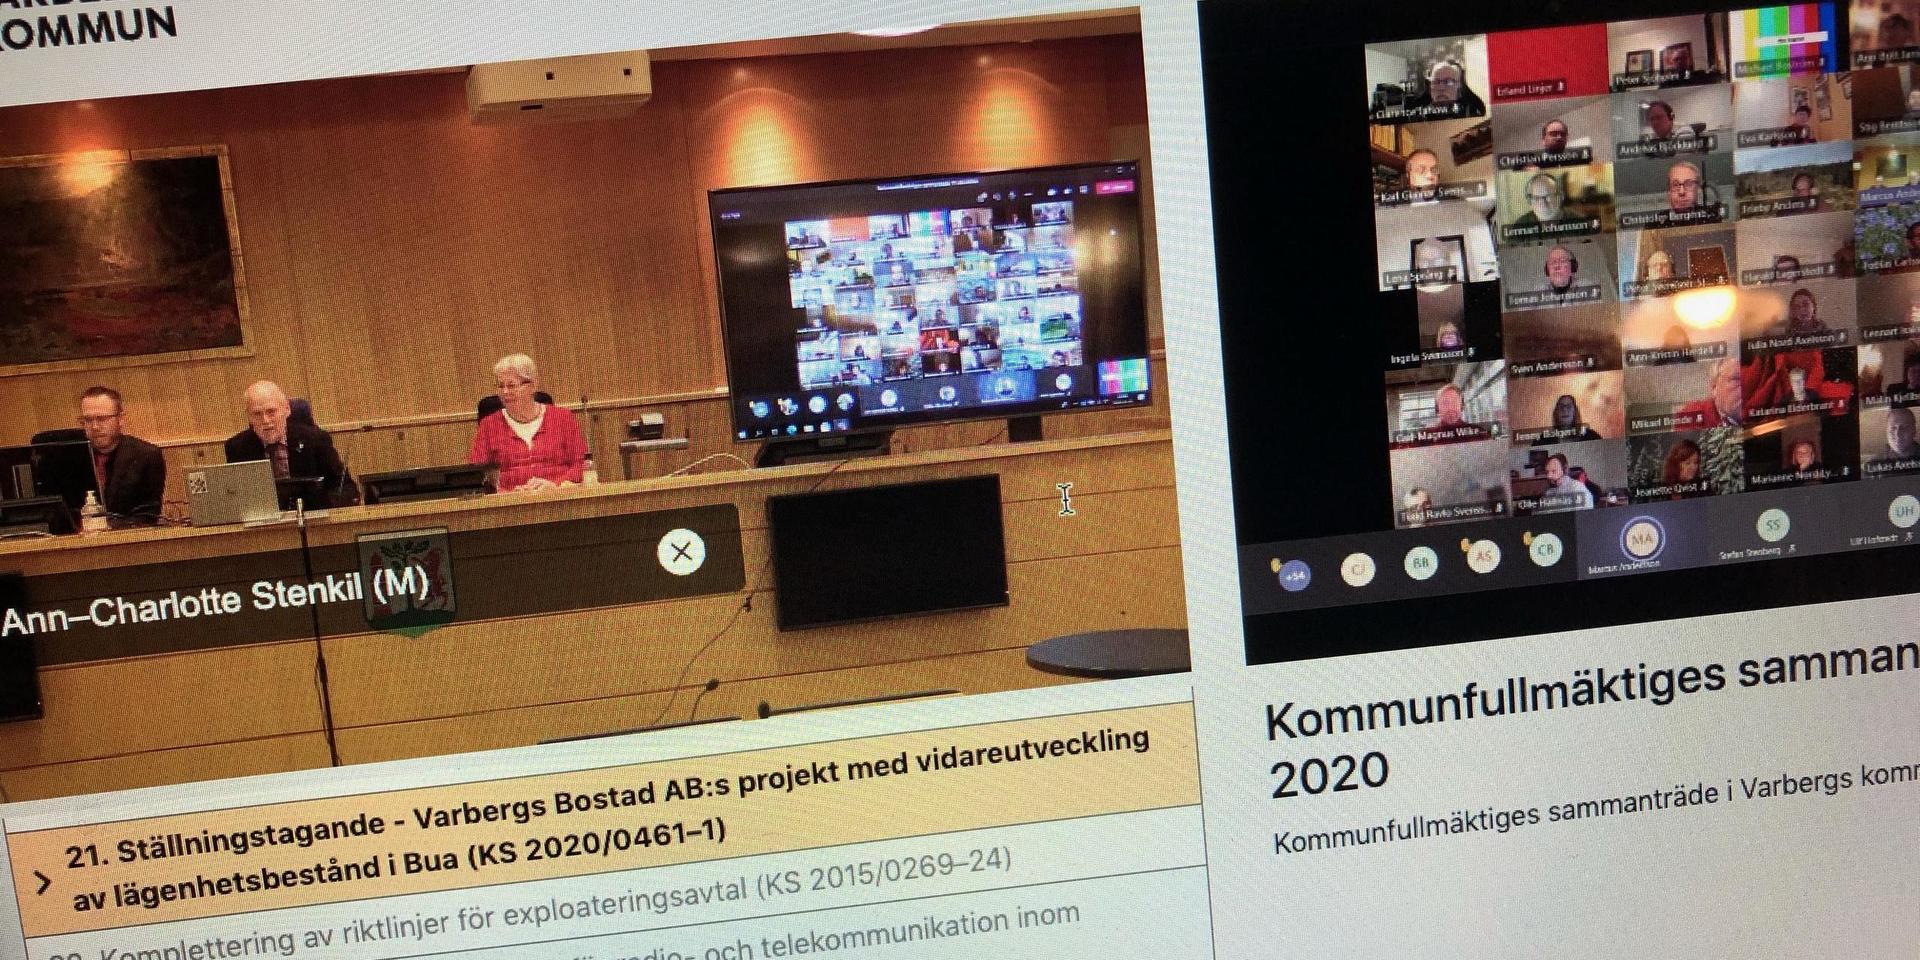 Det är svårt att ta sig in i kommunfullmäktige i Varberg, menar insändarskribenten. Just nu hålls mötena på distans på grund av pandemin.